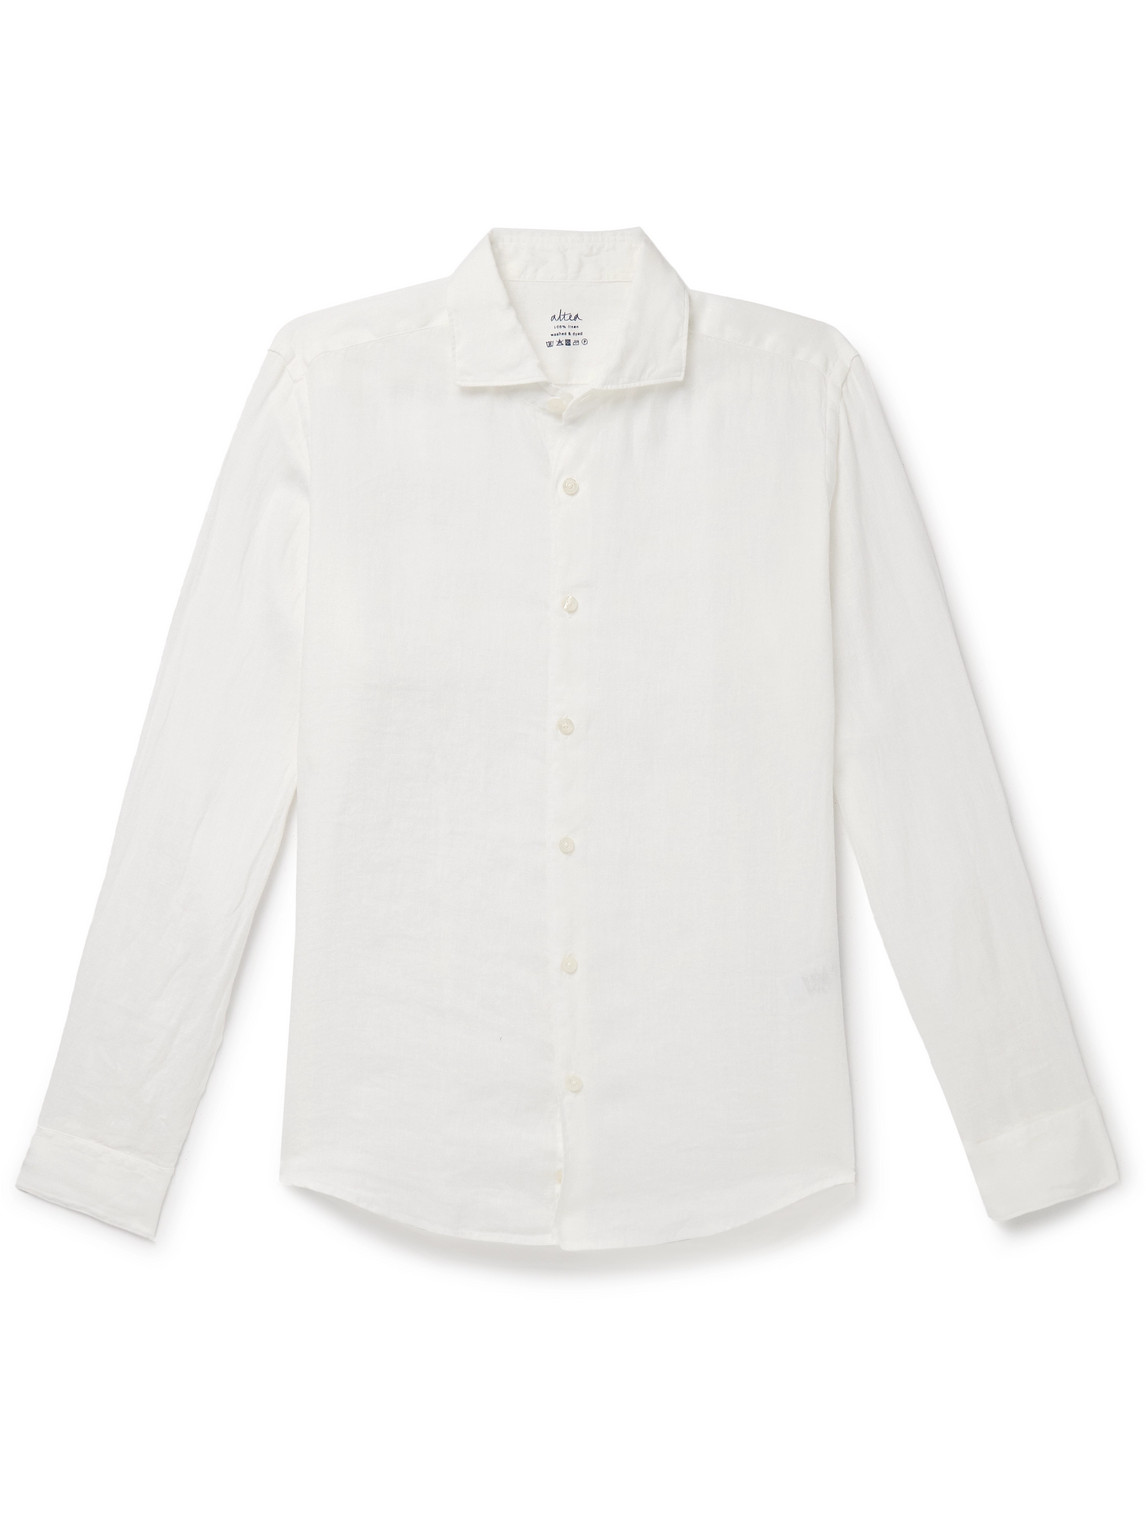 Altea - Mercer Slim-Fit Garment-Dyed Washed-Linen Shirt - Men - White - XL von Altea